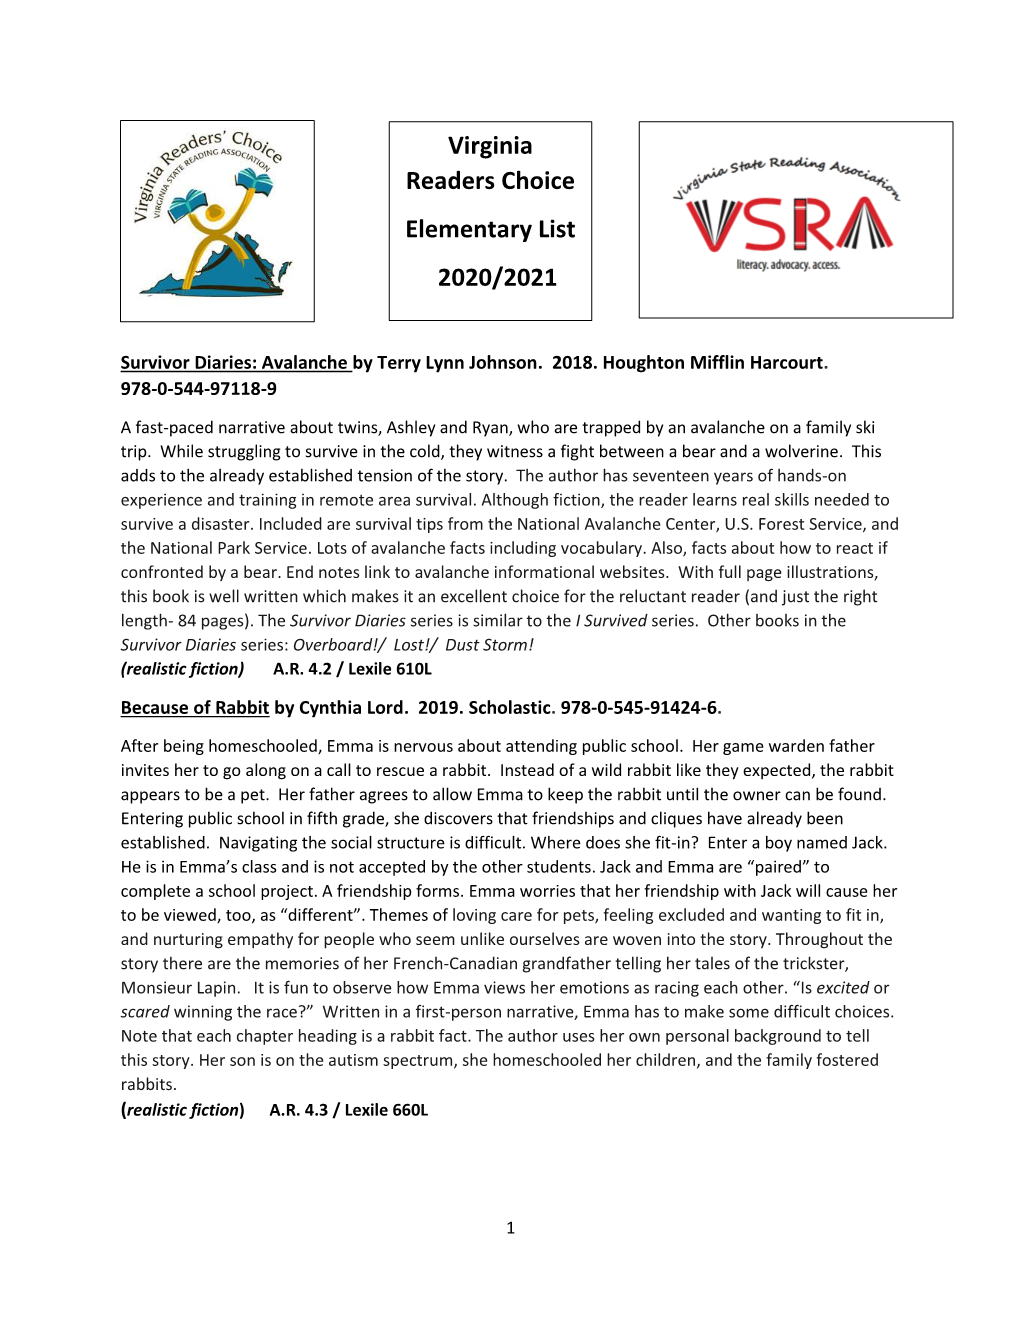 Virginia Readers Choice Elementary List 2020/2021